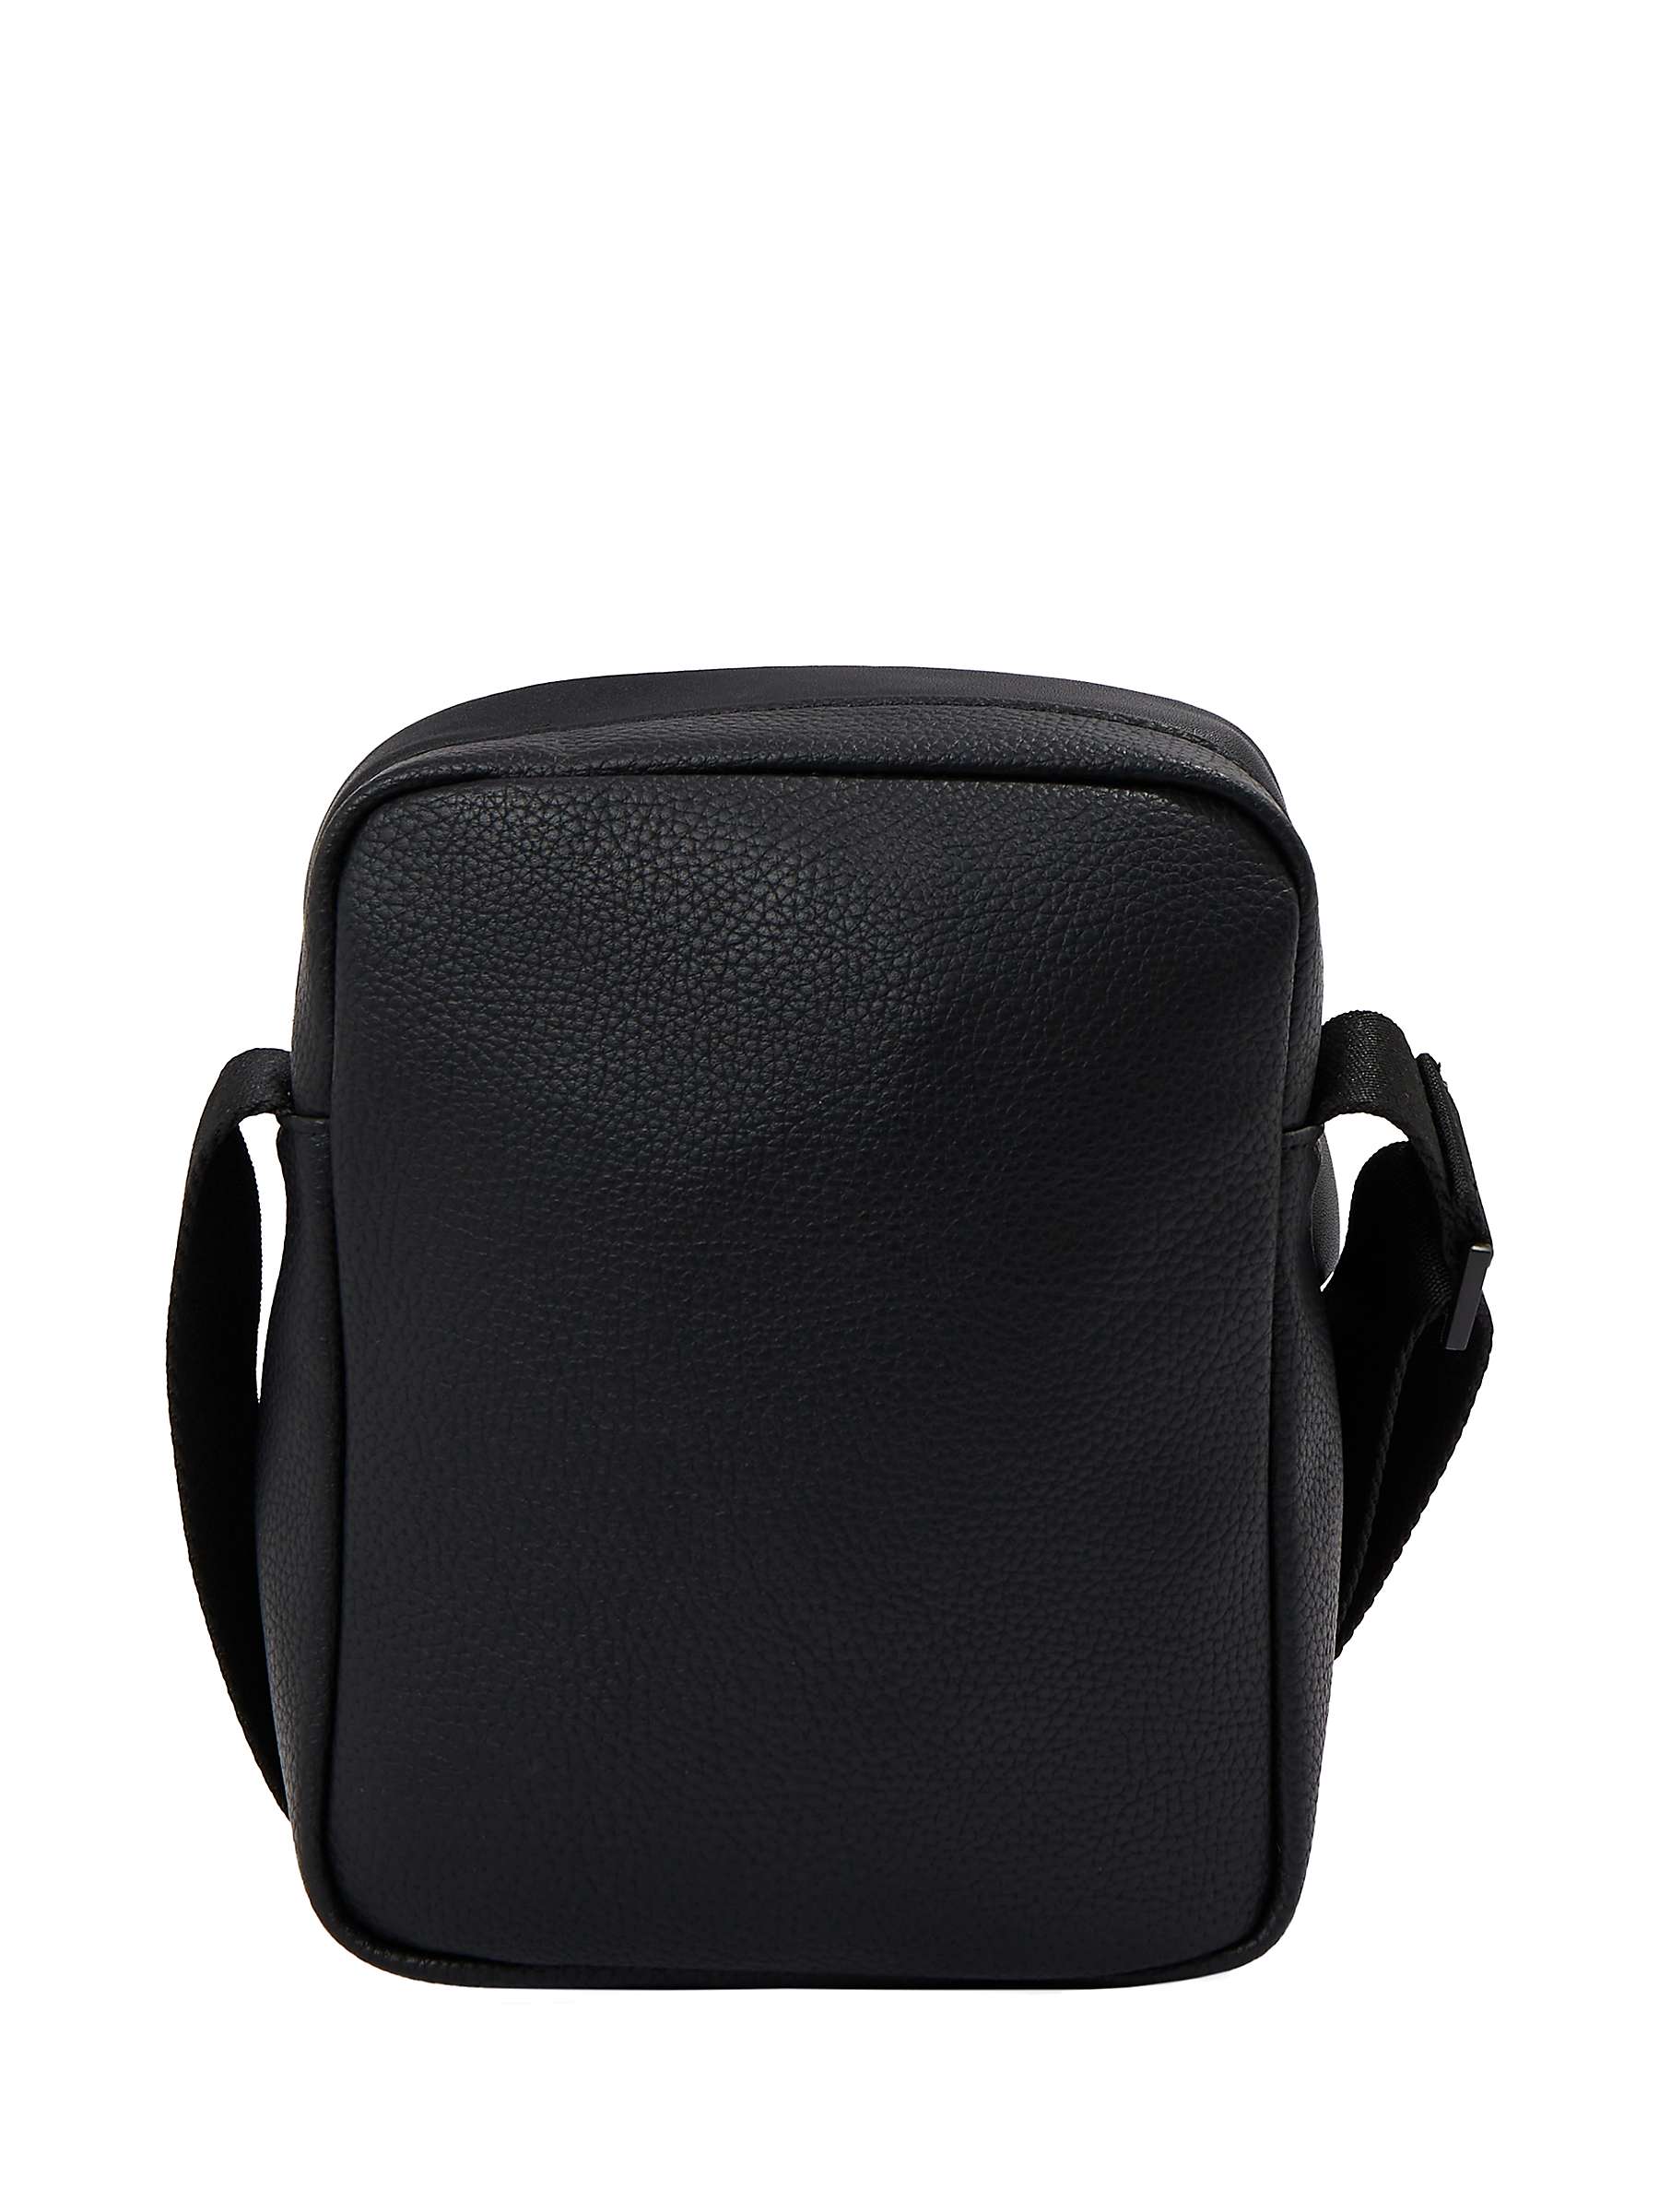 Buy Calvin Klein Messenger Bag, Black Online at johnlewis.com